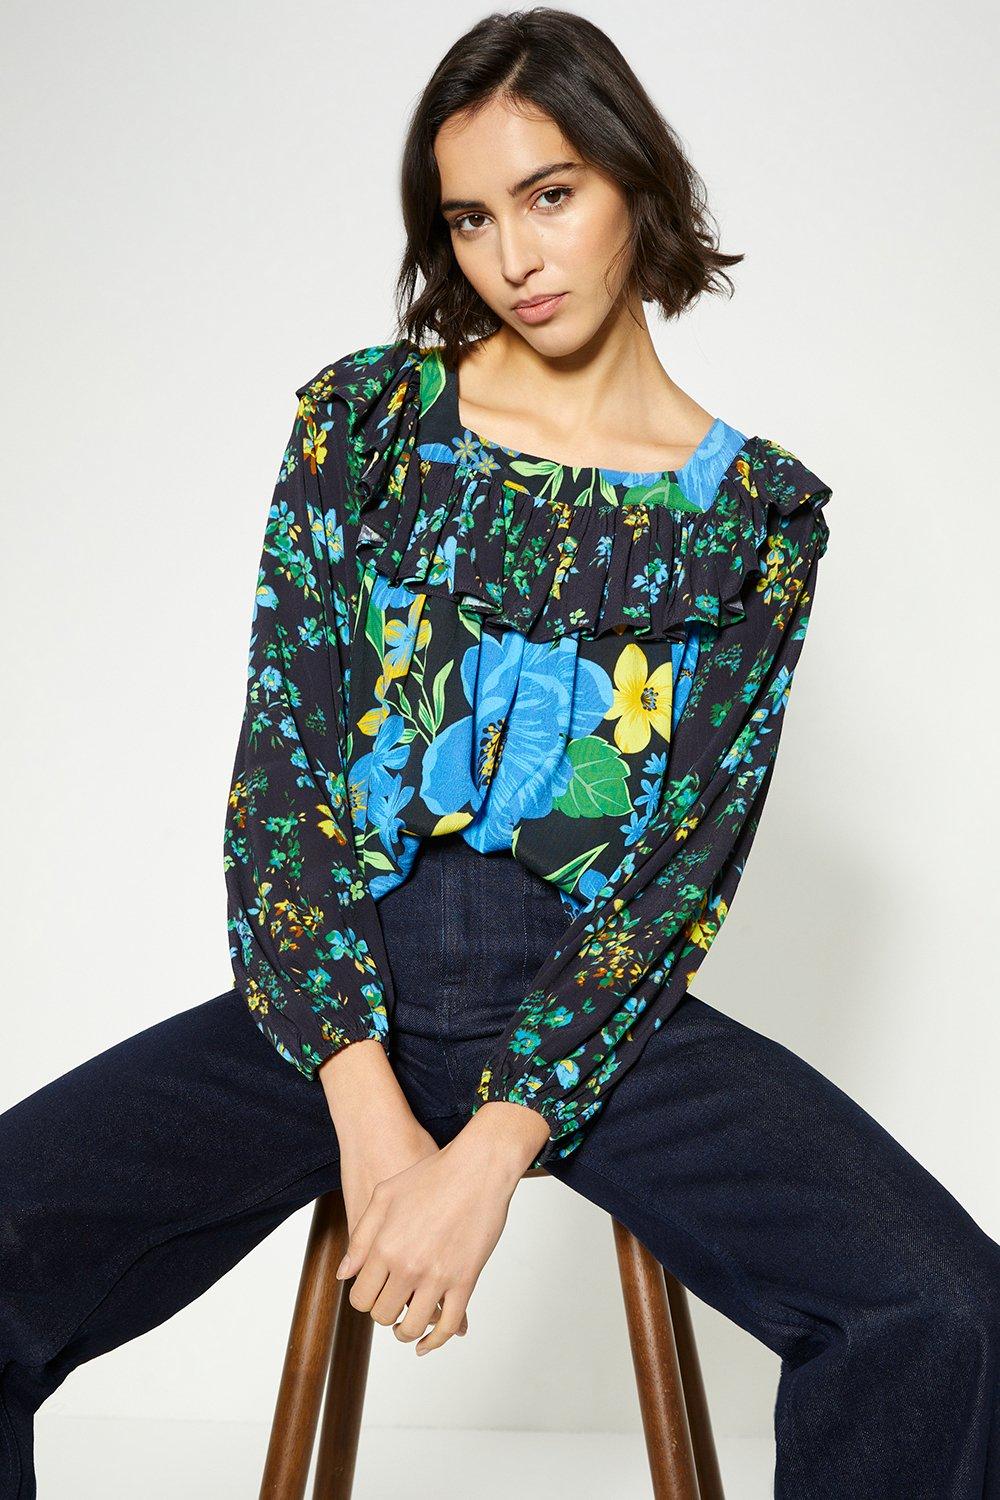 Блузка с ярким цветочным принтом и нашивками Oasis, мультиколор женская блузка с цветочным принтом ажурная блузка с промежностью 2021